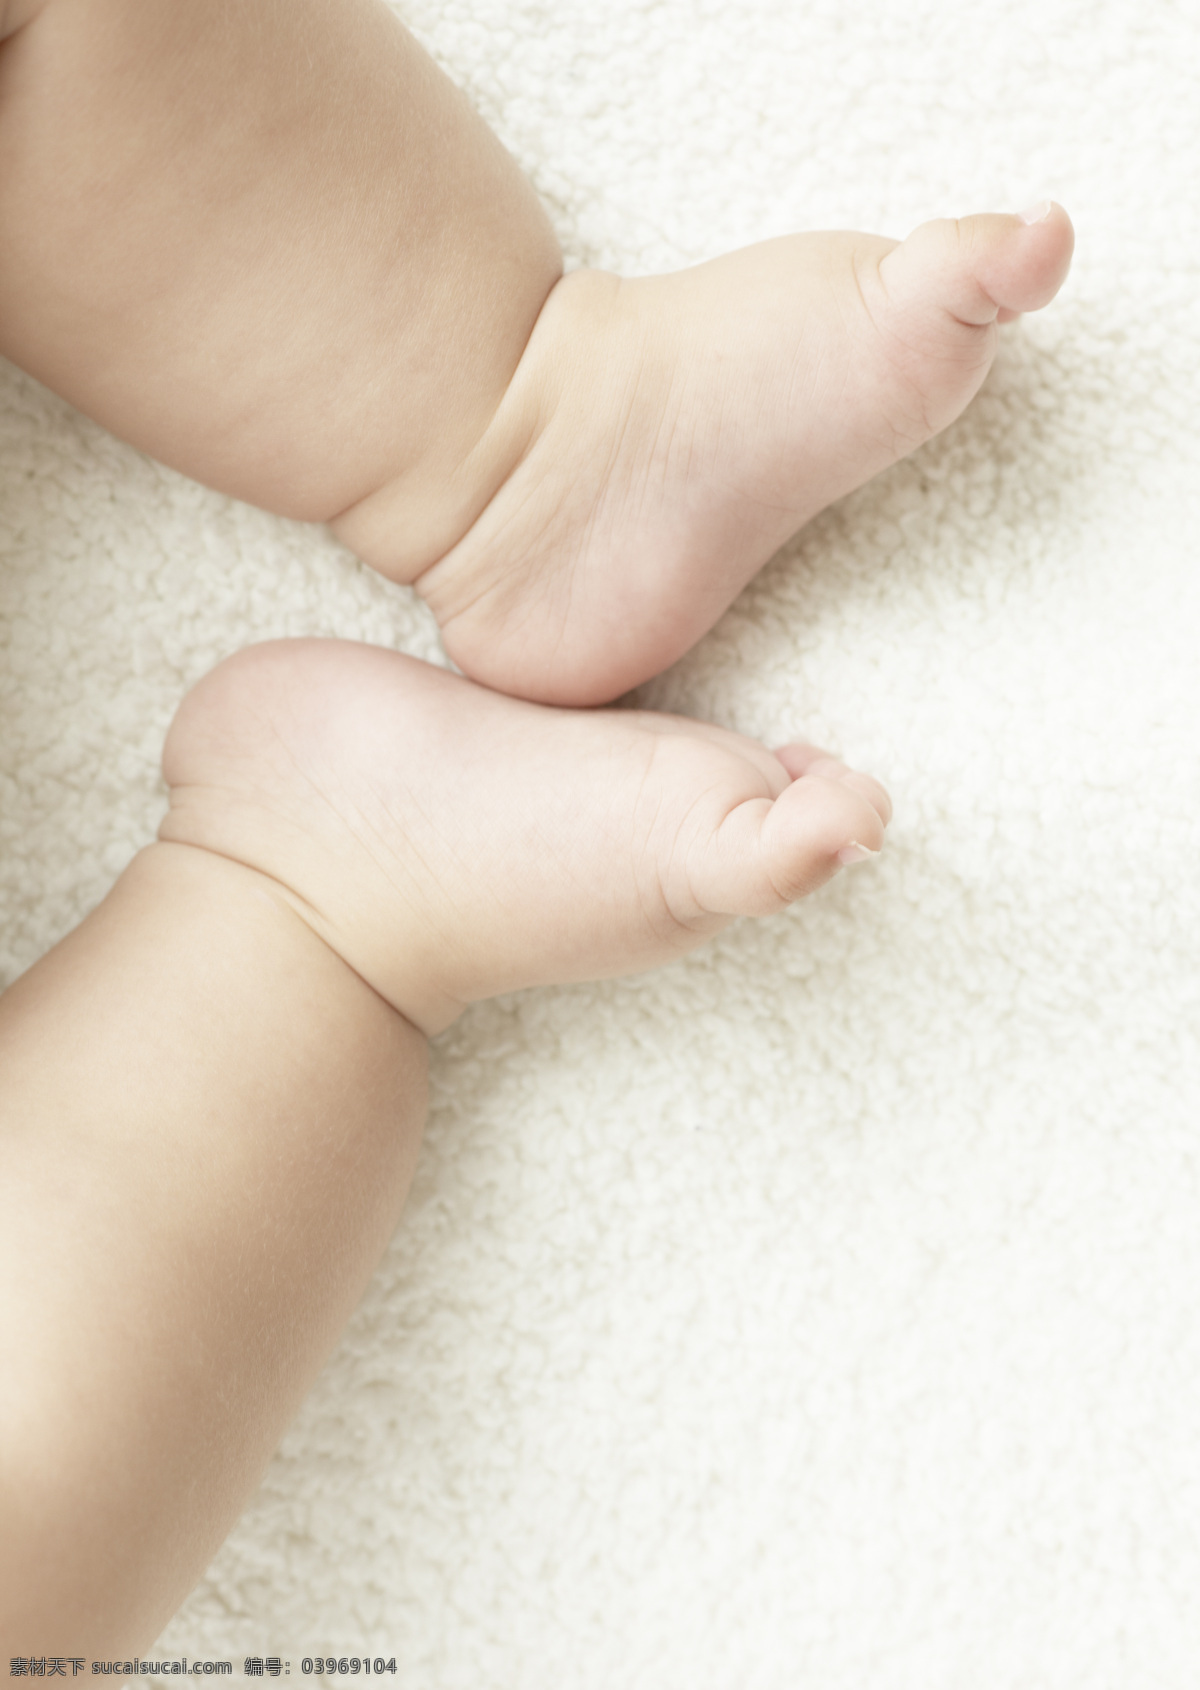 婴儿宝宝小脚 婴儿 宝宝 小脚 婴儿脚 宝宝脚 可爱 儿童 幼儿 儿童幼儿 人物图库